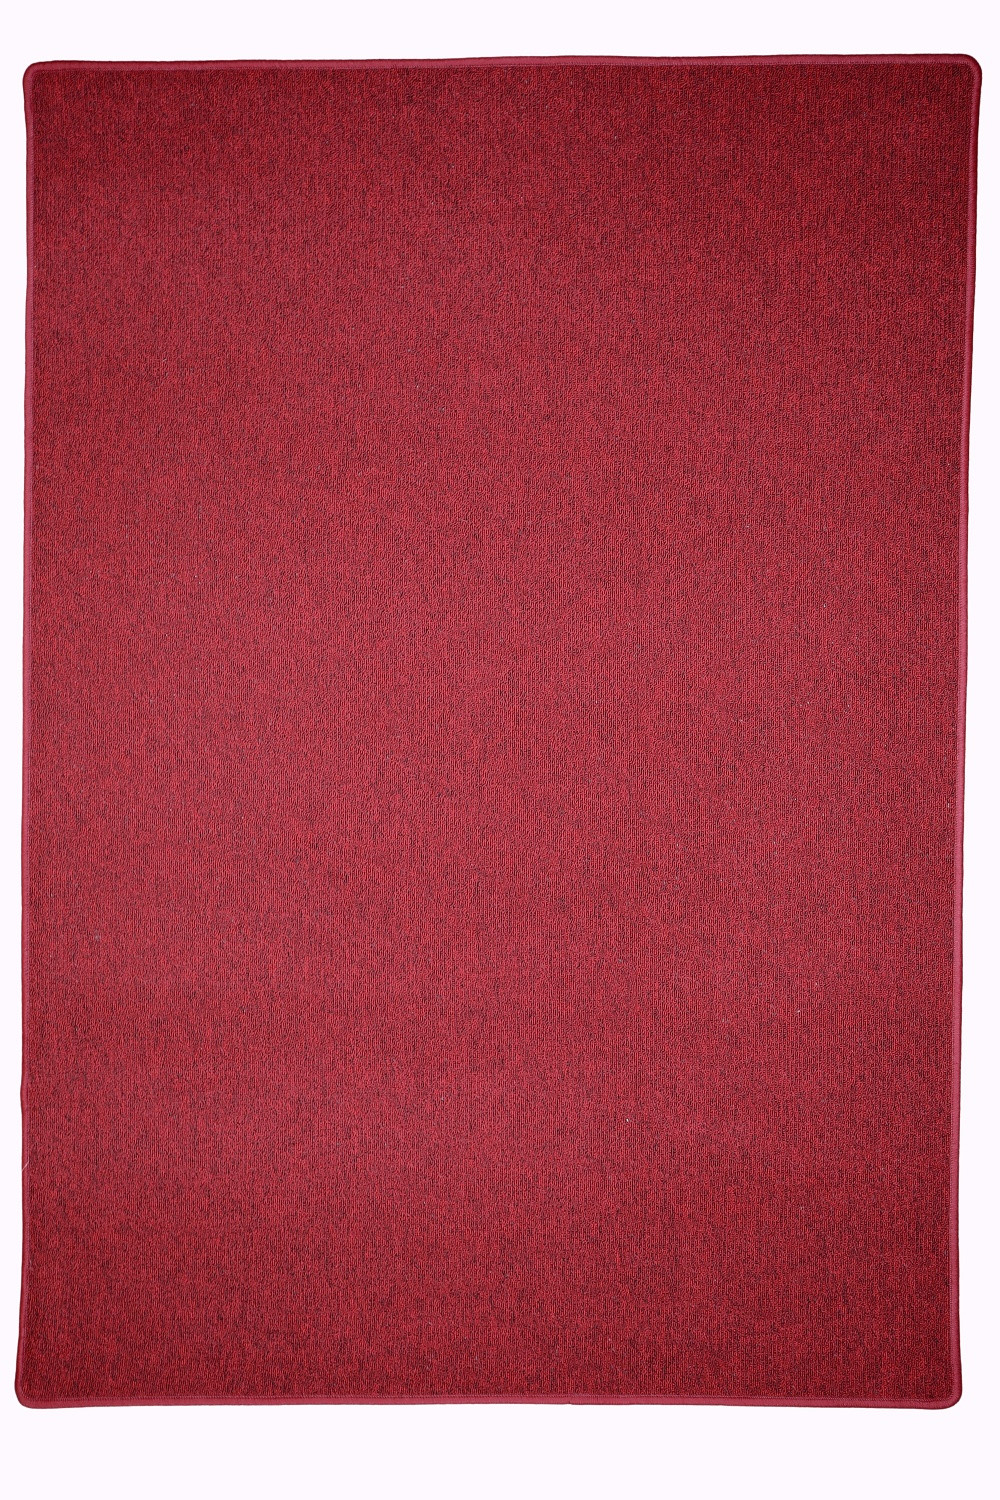 Kusový koberec Astra červená - 200x300 cm Vopi koberce 